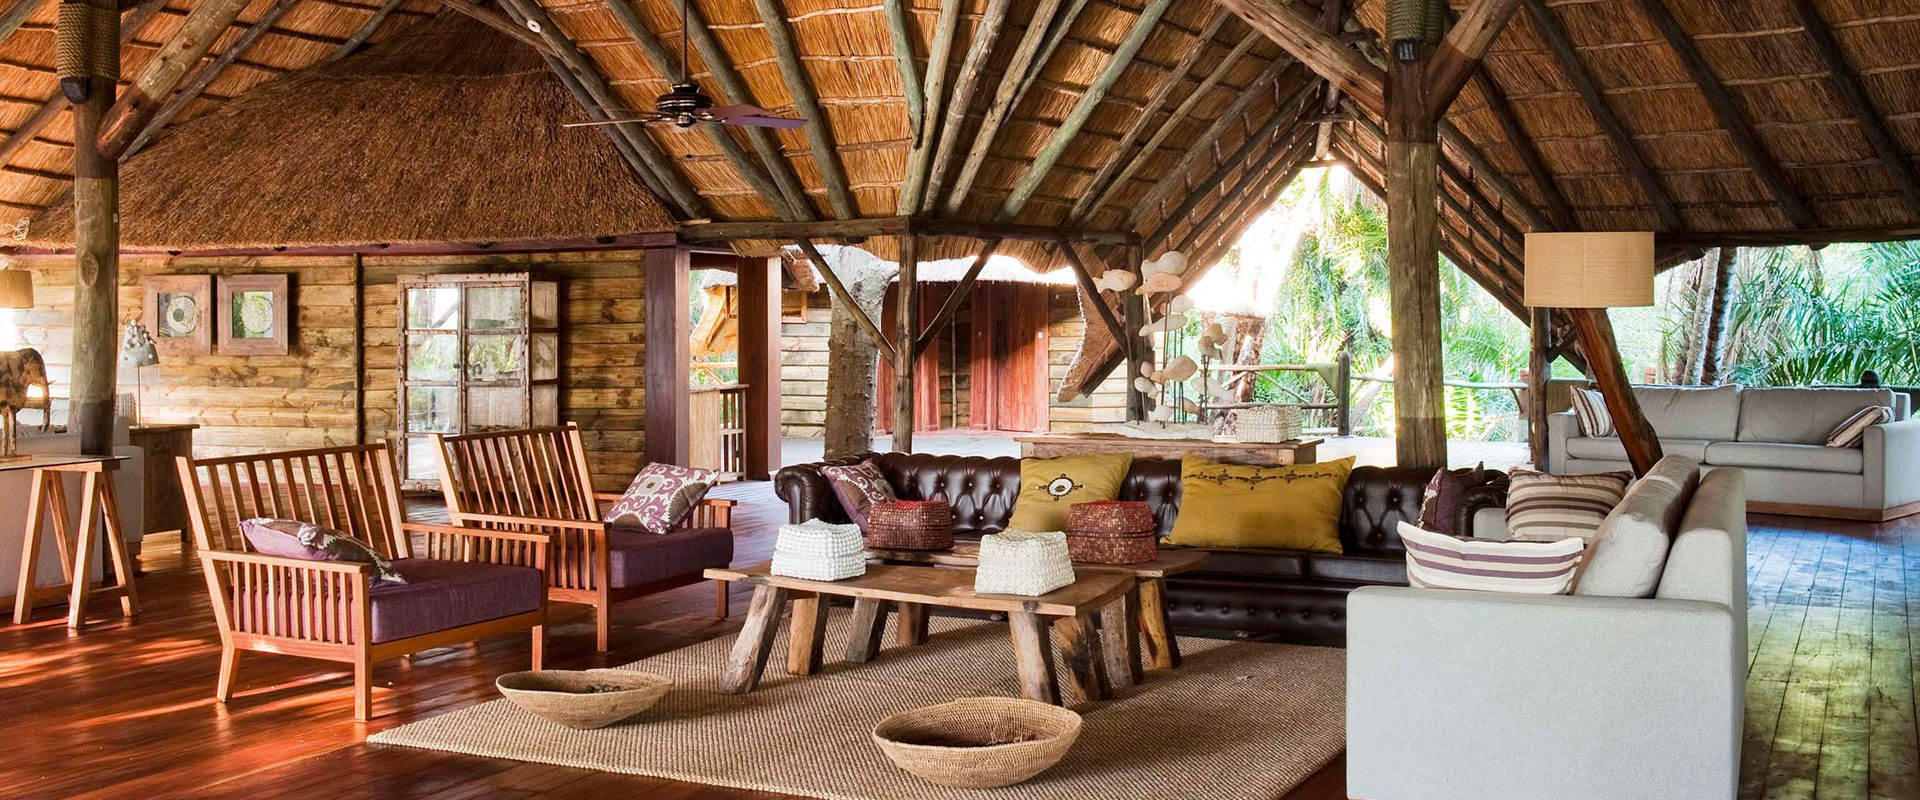 6 Days Tanzania Lodge Safari